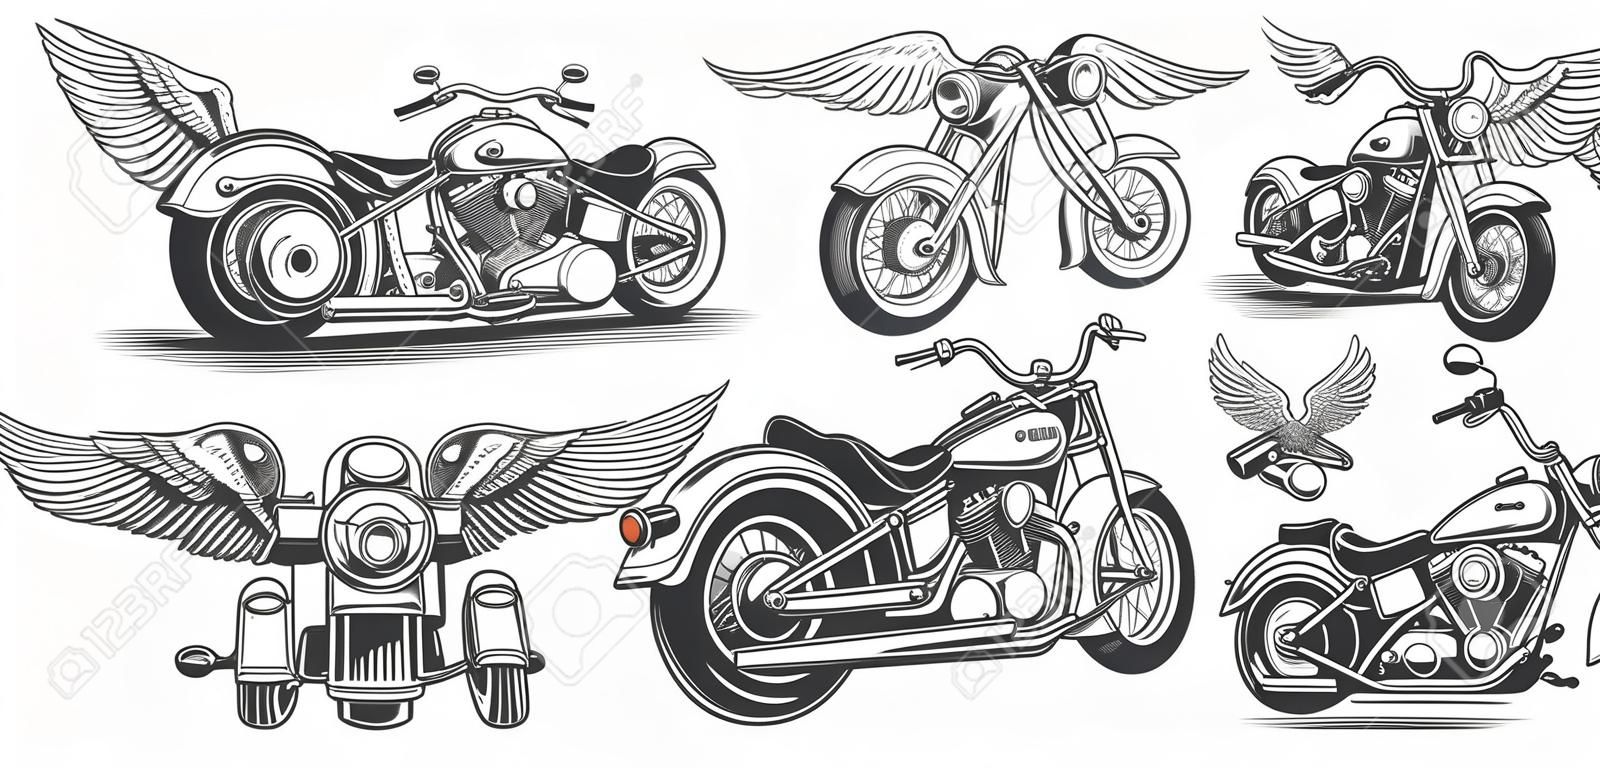 Ensemble d'illustrations, icônes de moto vintage dessinée à la main dans divers angles, crânes, ailes dans le style de la gravure. Classic chopper à l'encre. Impression, gravure, gabarit, élément de conception